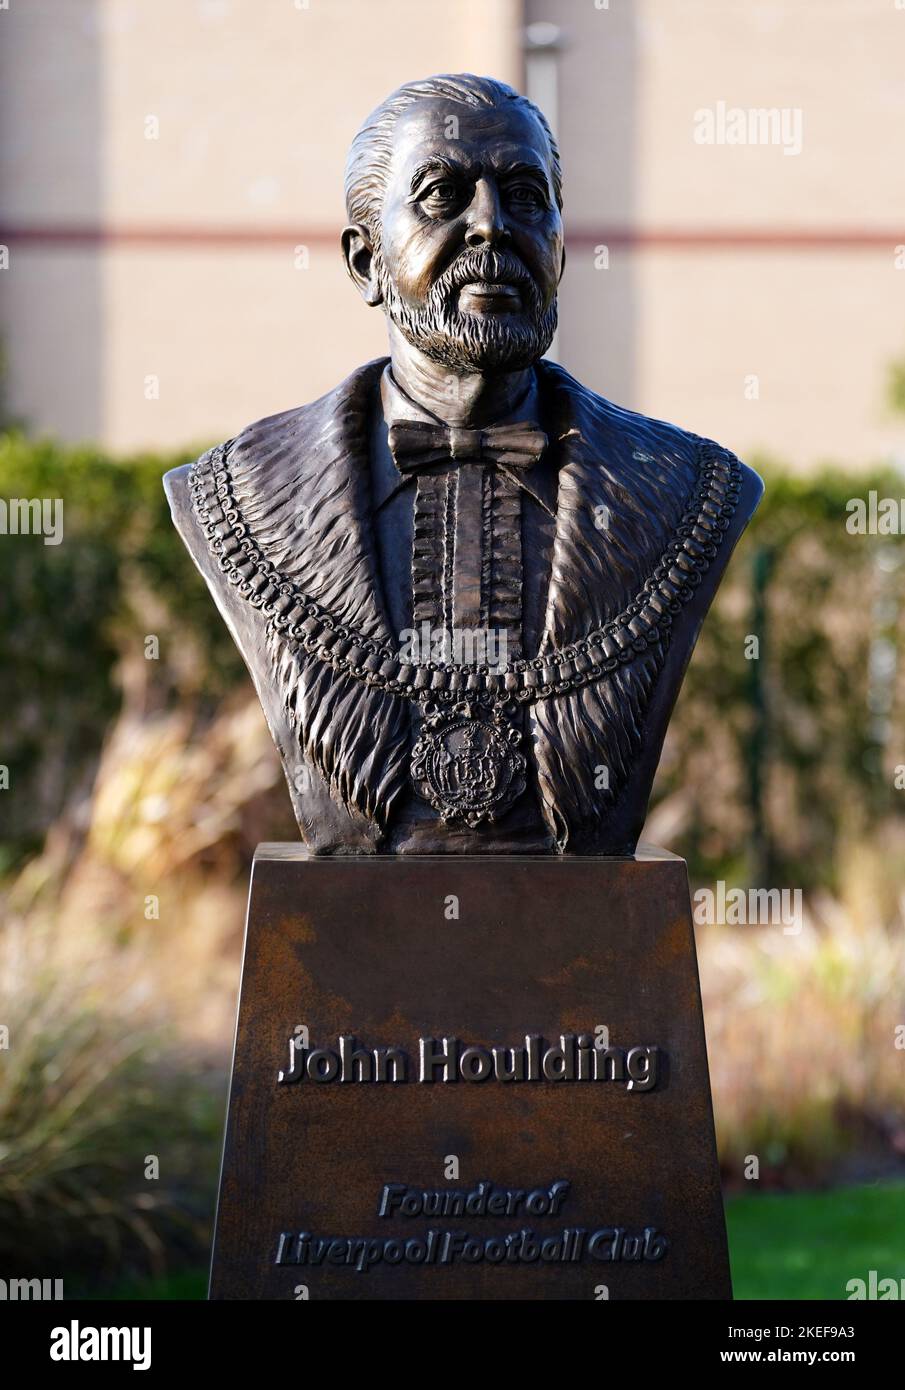 Eine Statue des FC Liverpool-Gründers John Houlding vor dem Premier League-Spiel in Anfield, Liverpool. Bilddatum: Samstag, 12. November 2022. Stockfoto